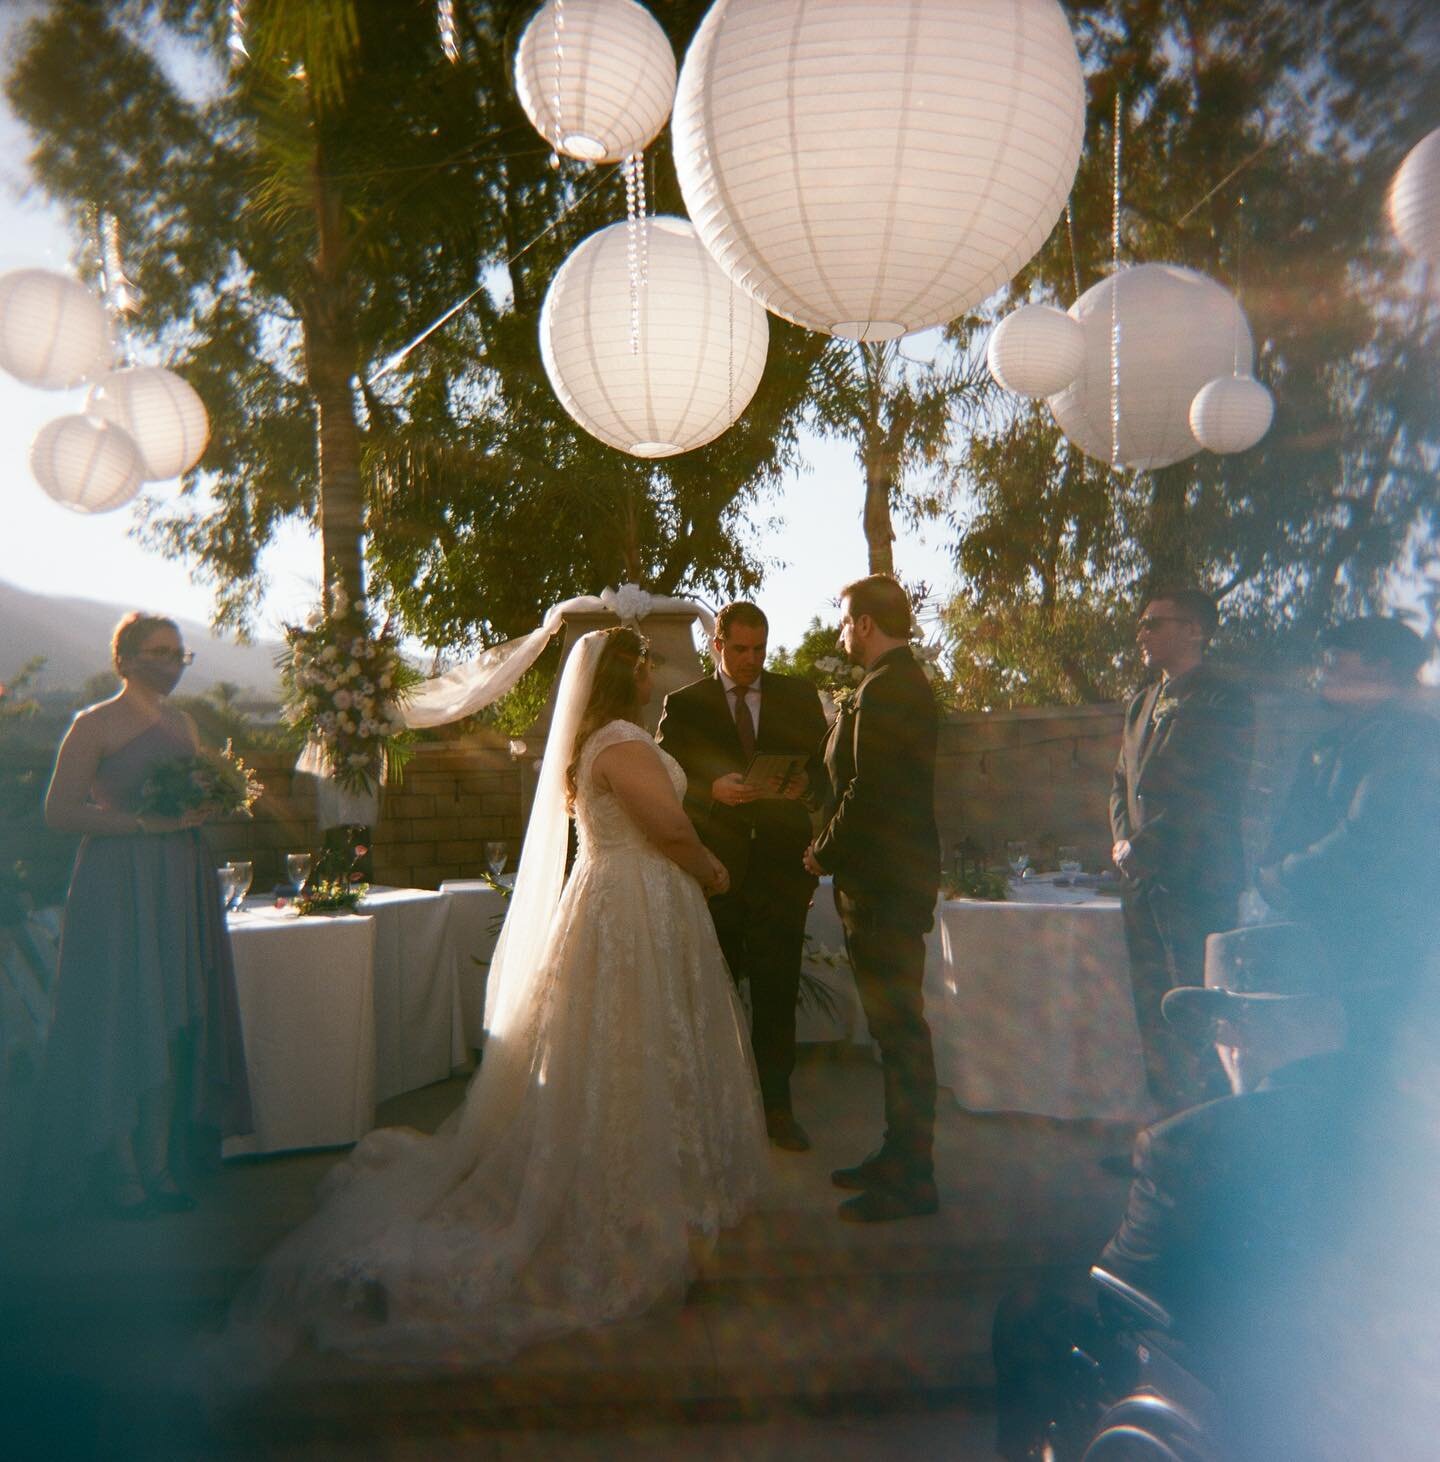 Alex + Alicia on their wedding day #120mm #holga